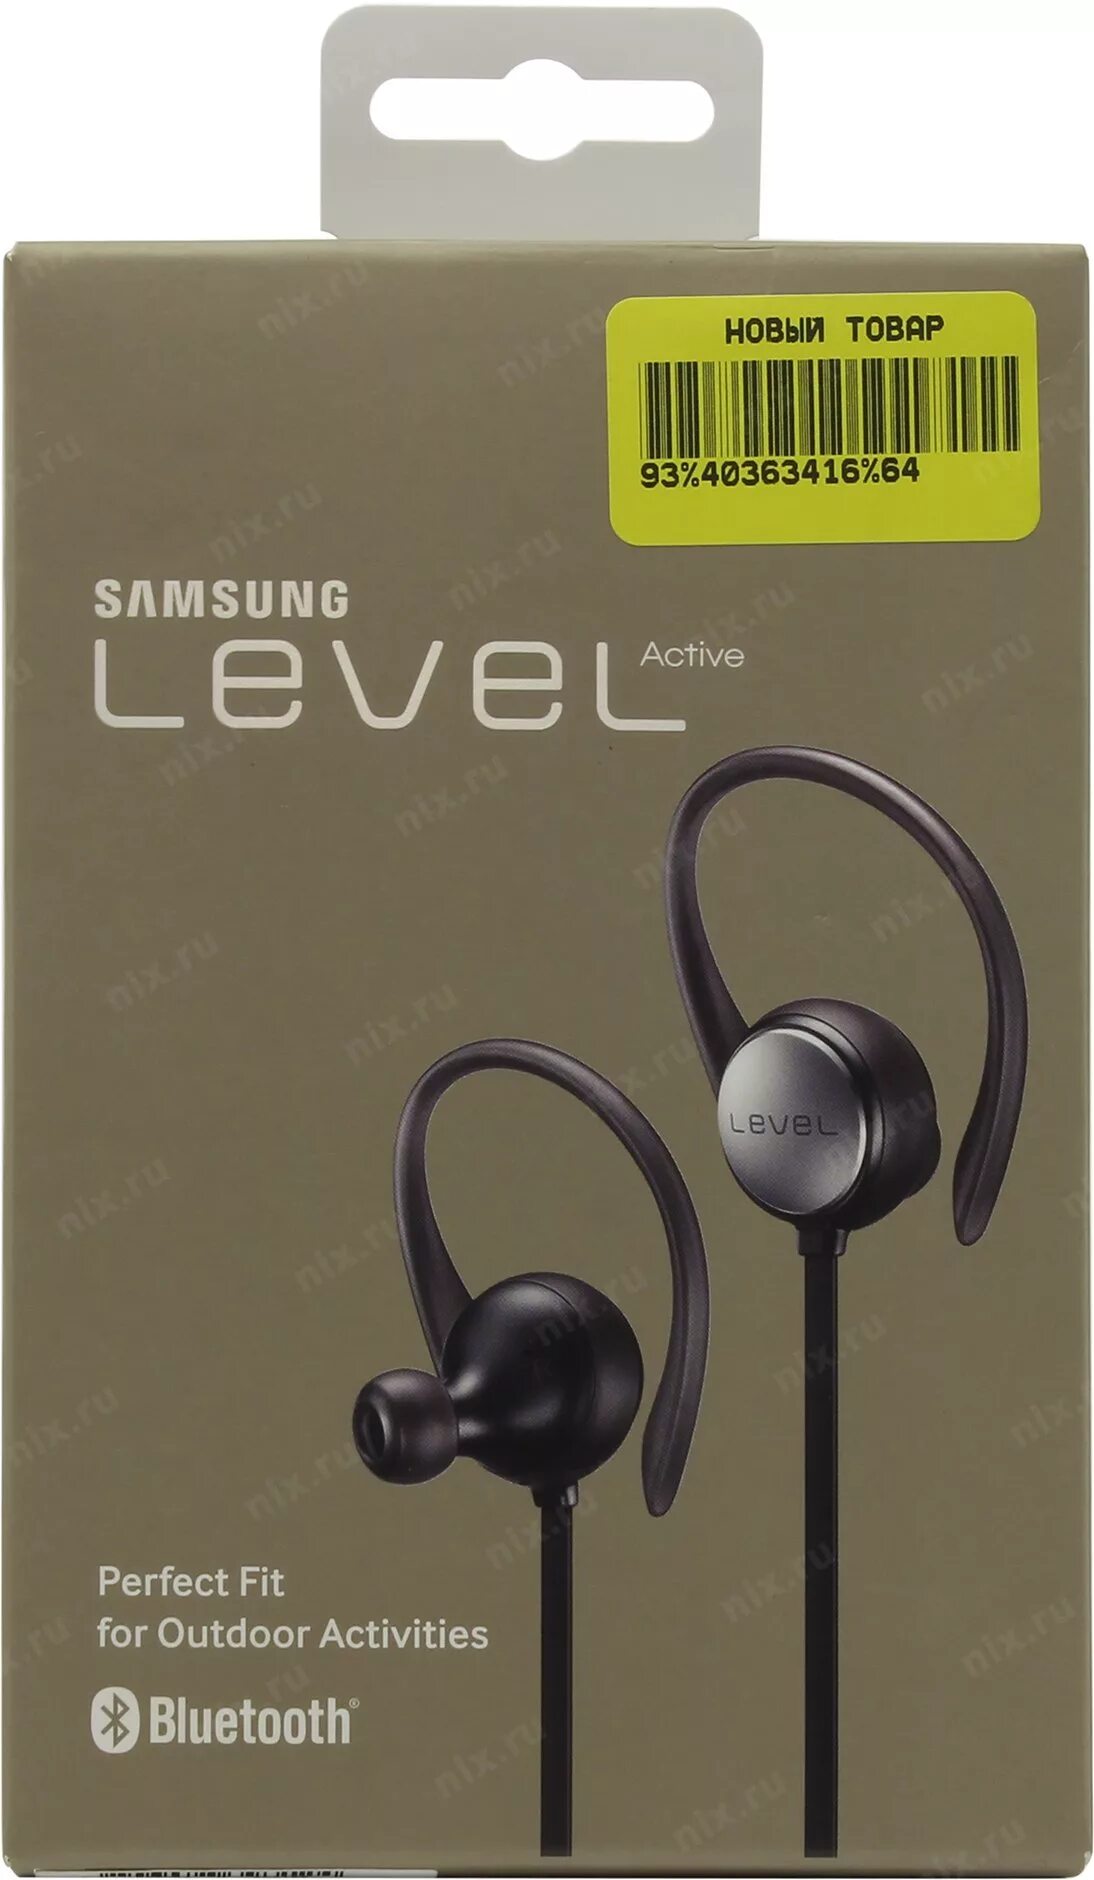 Наушники Samsung EO-bg930 Level Active. Samsung EO-bg930 Level Active. Samsung EO bg930cbegru. Samsung EO-bg930 Level Activ. Level active